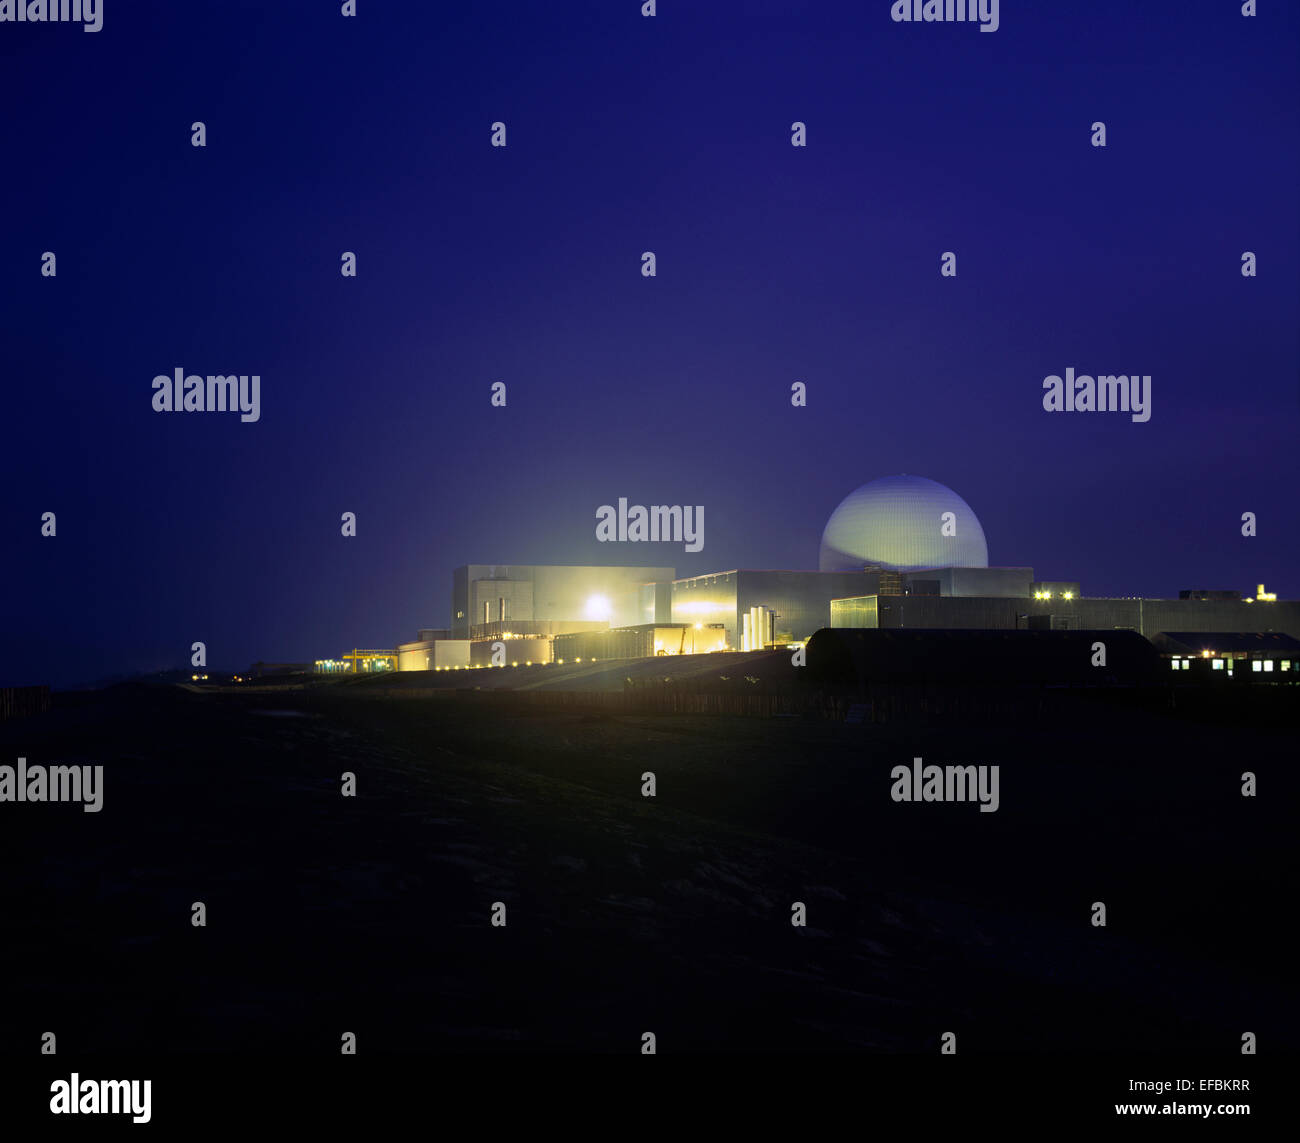 Un potente proiettore illumina Sizewell una centrale nucleare. Sizewell B reattore è all'interno della cupola sulla destra . Foto Stock